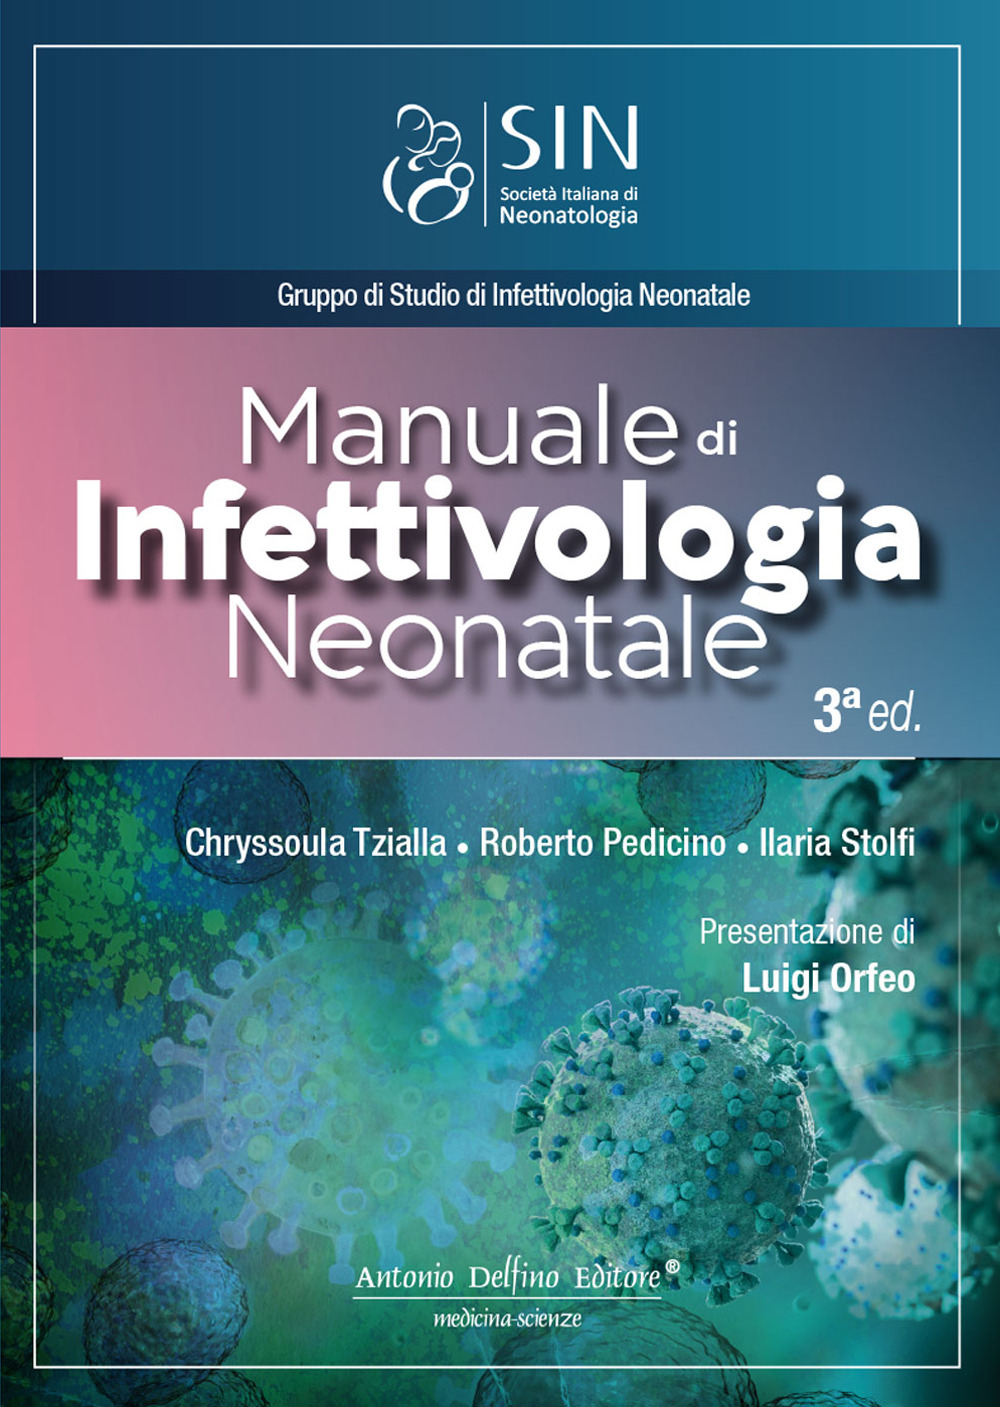 Manuale di infettivologia neonatale